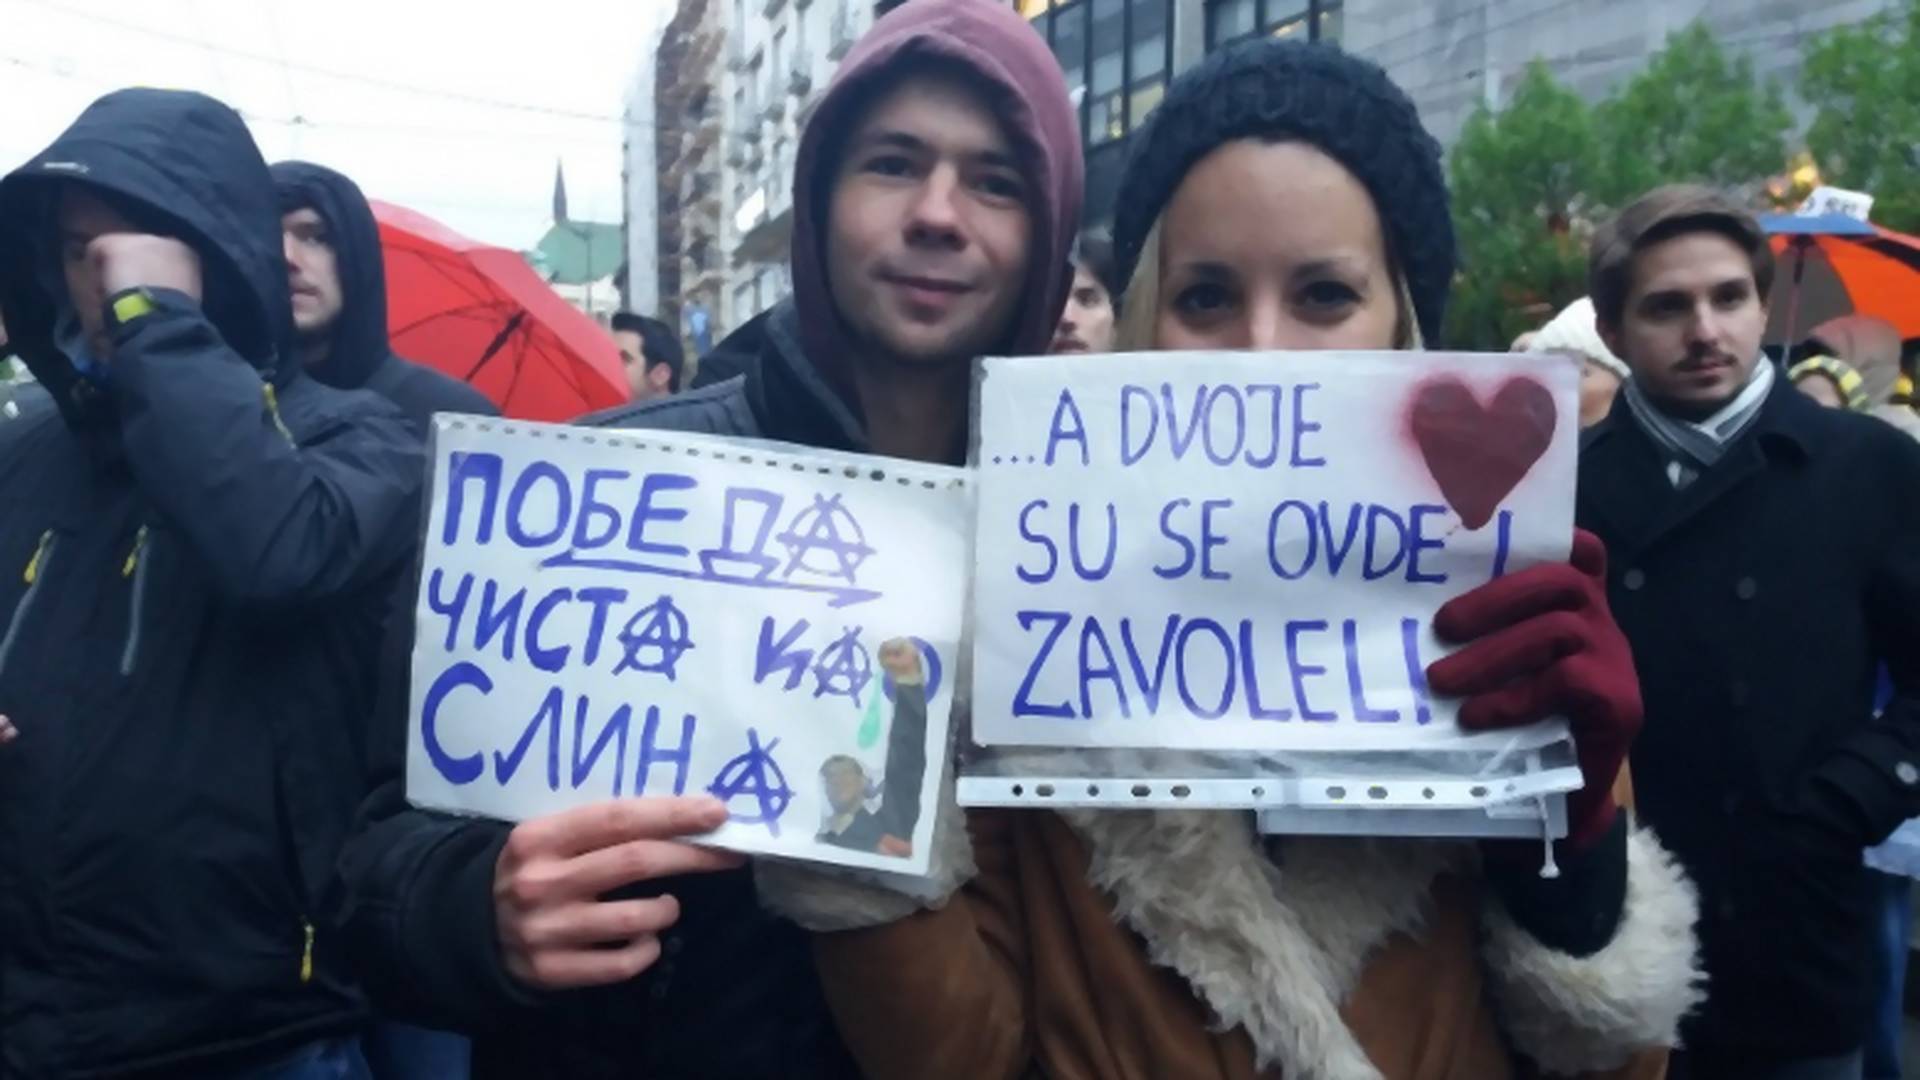 "A dvoje su se ovde i zavoleli": Priča iza najljubavnijeg transparenta na protestu